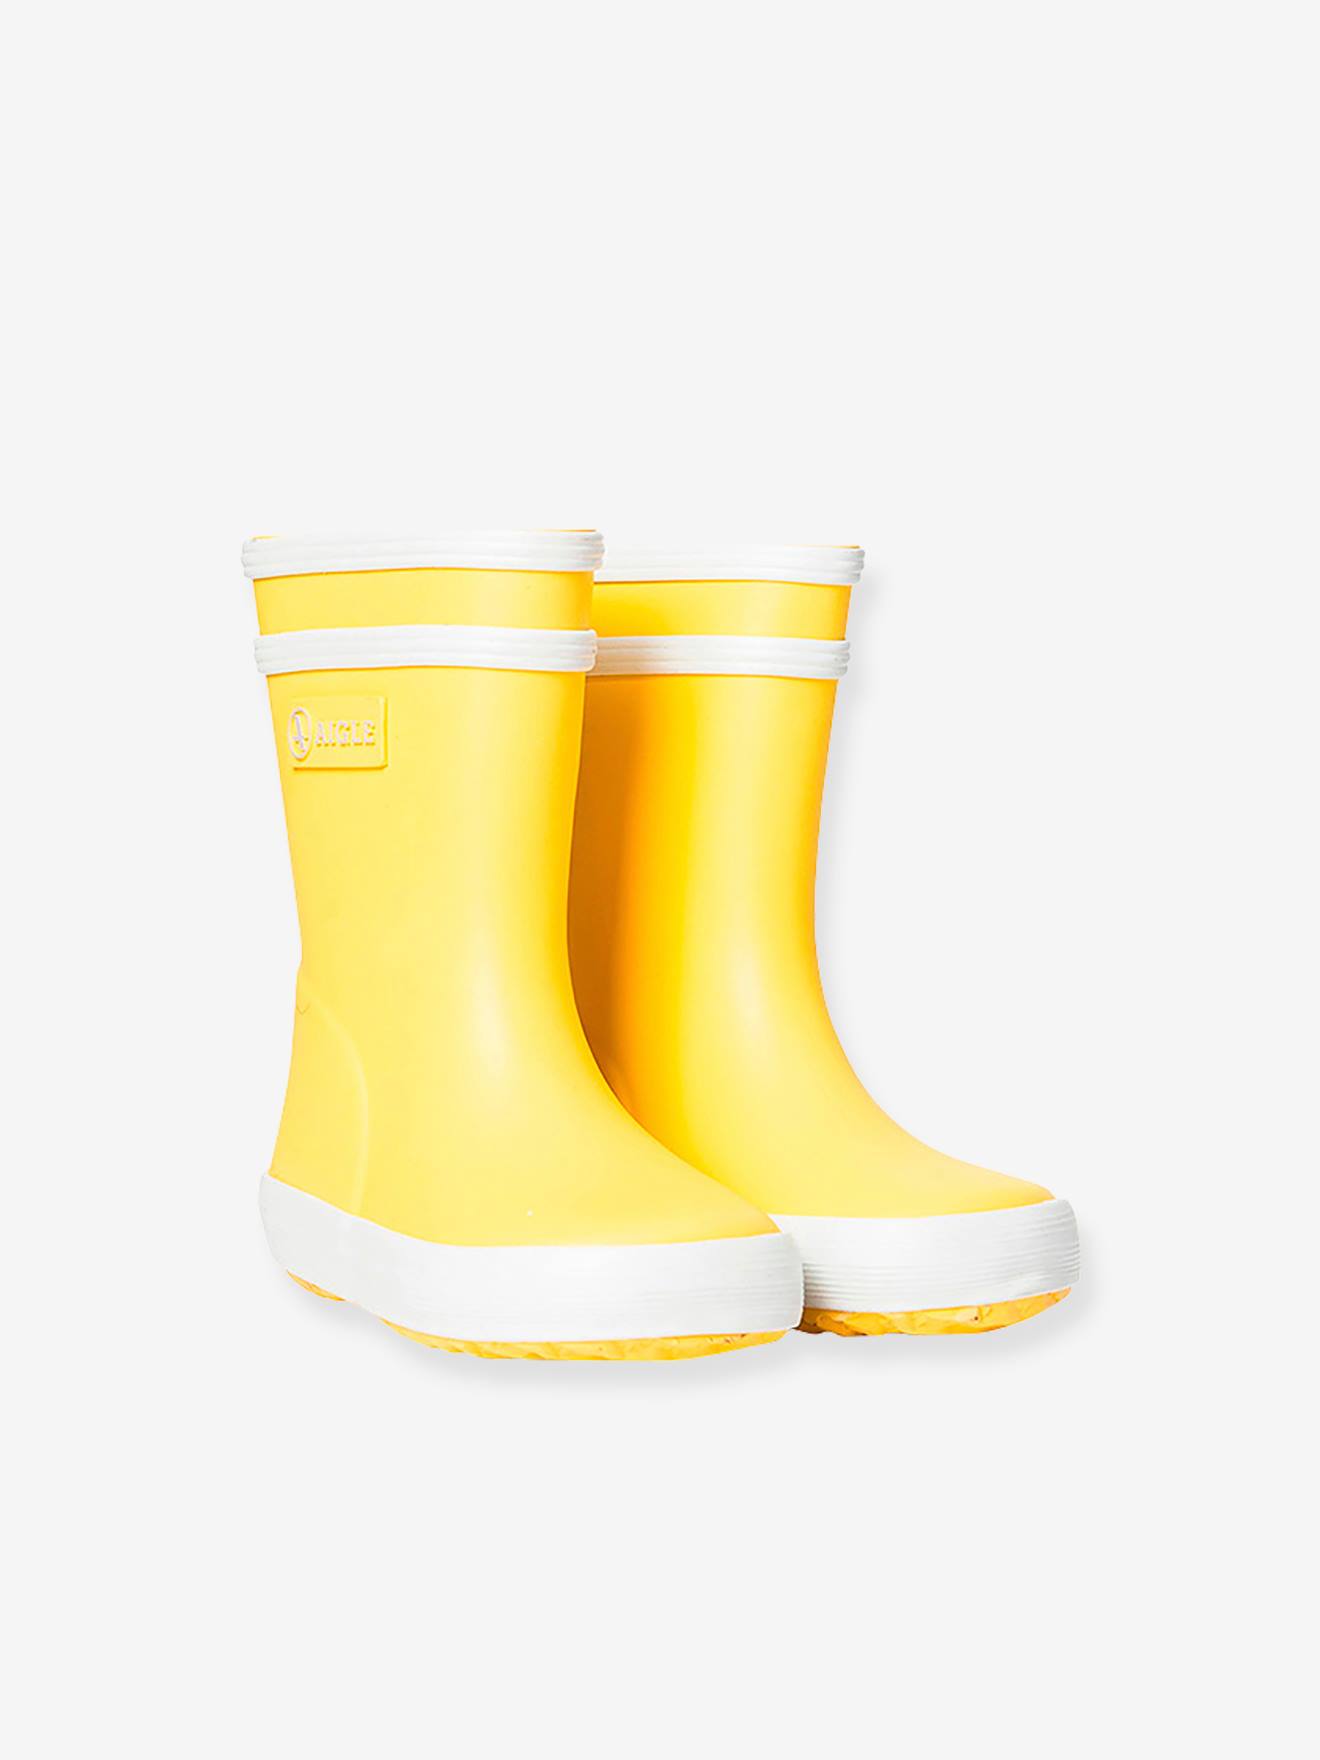 Botte de pluie jaune enfant avec anses BFLAC 39,90 €